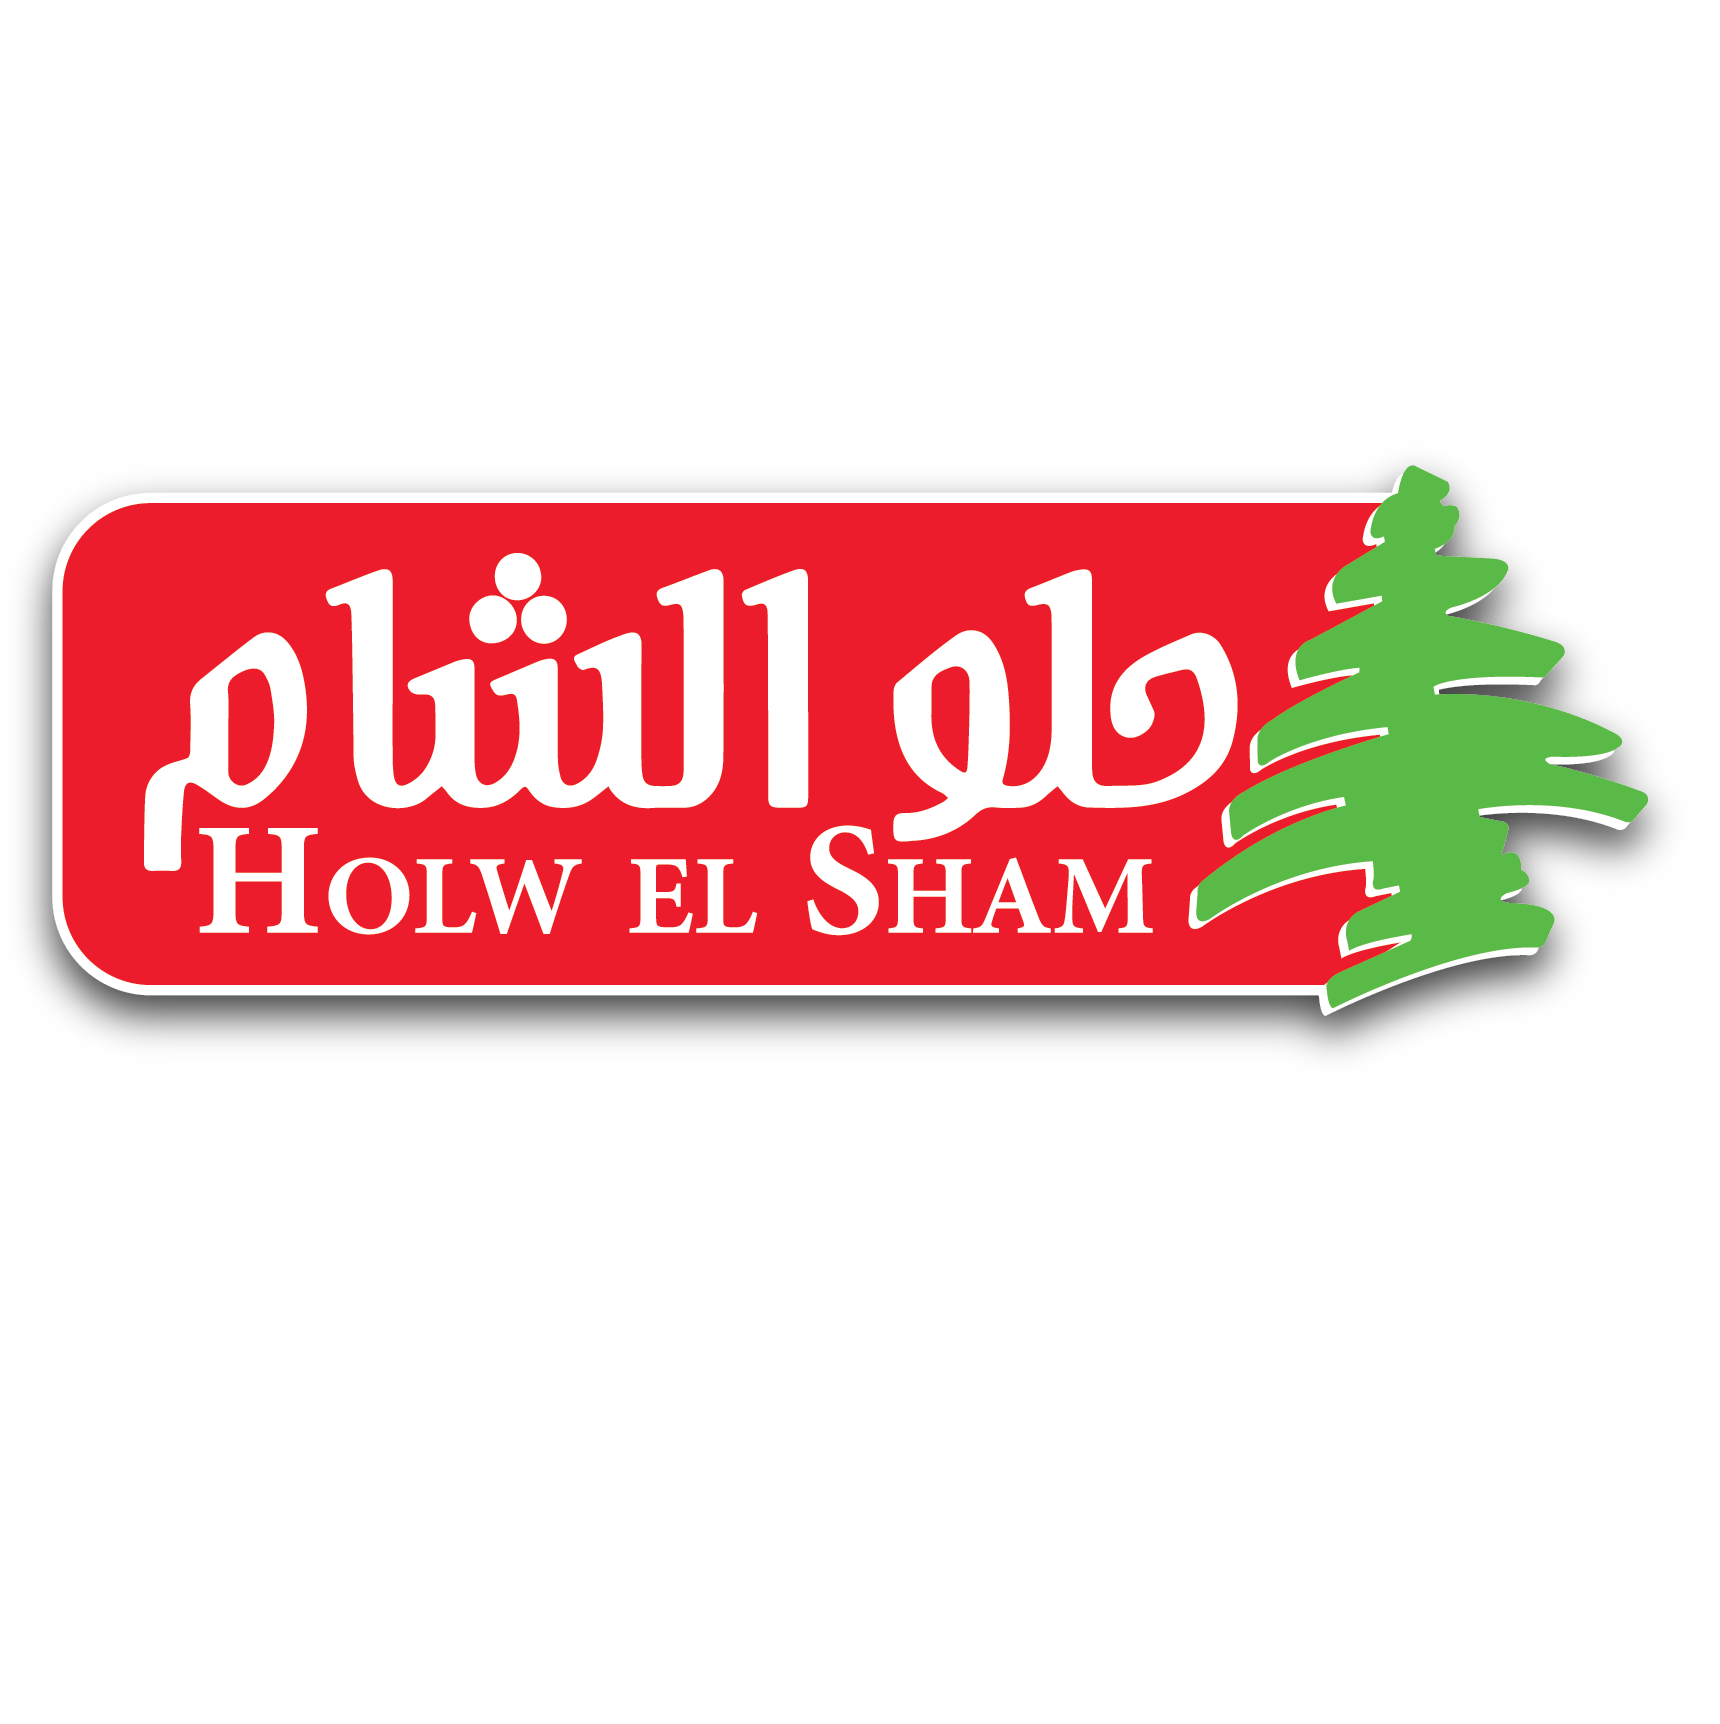 Holw El Sham